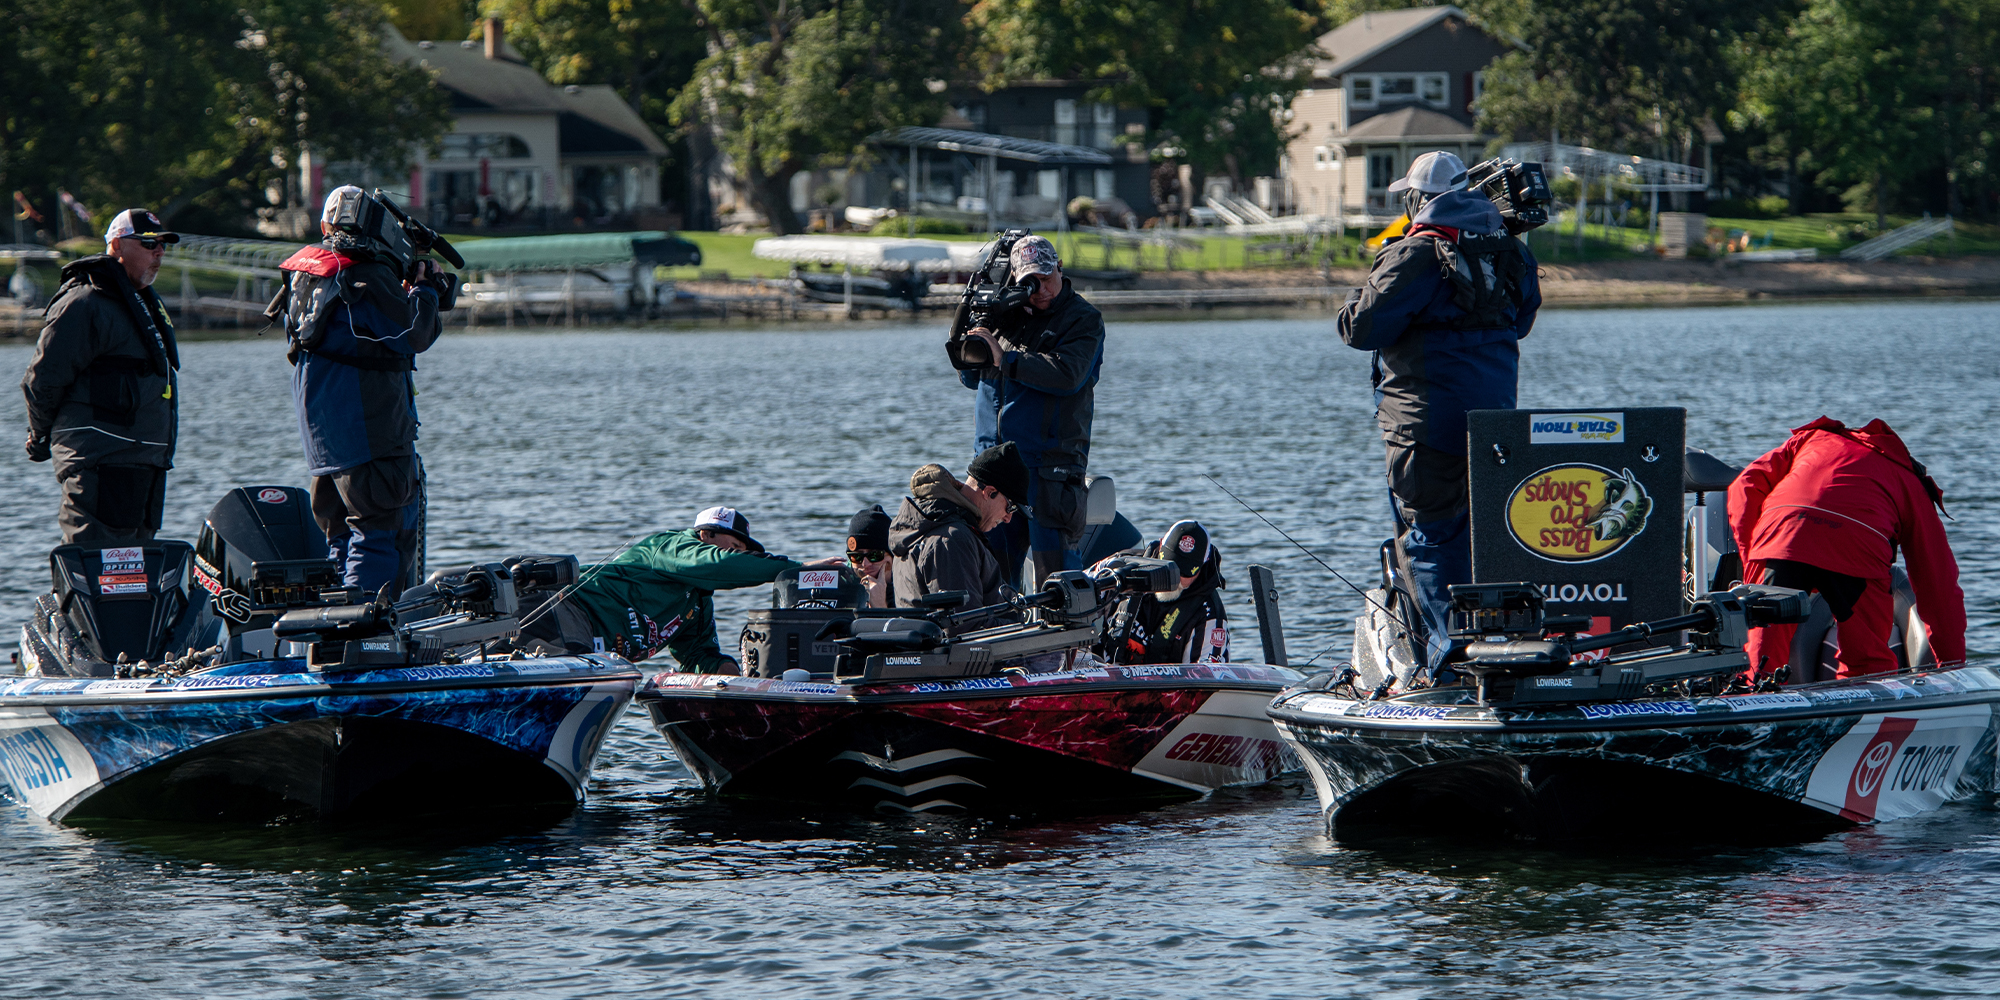 GALLERY: Team Knighten breaks down Lake Ida - Major League Fishing